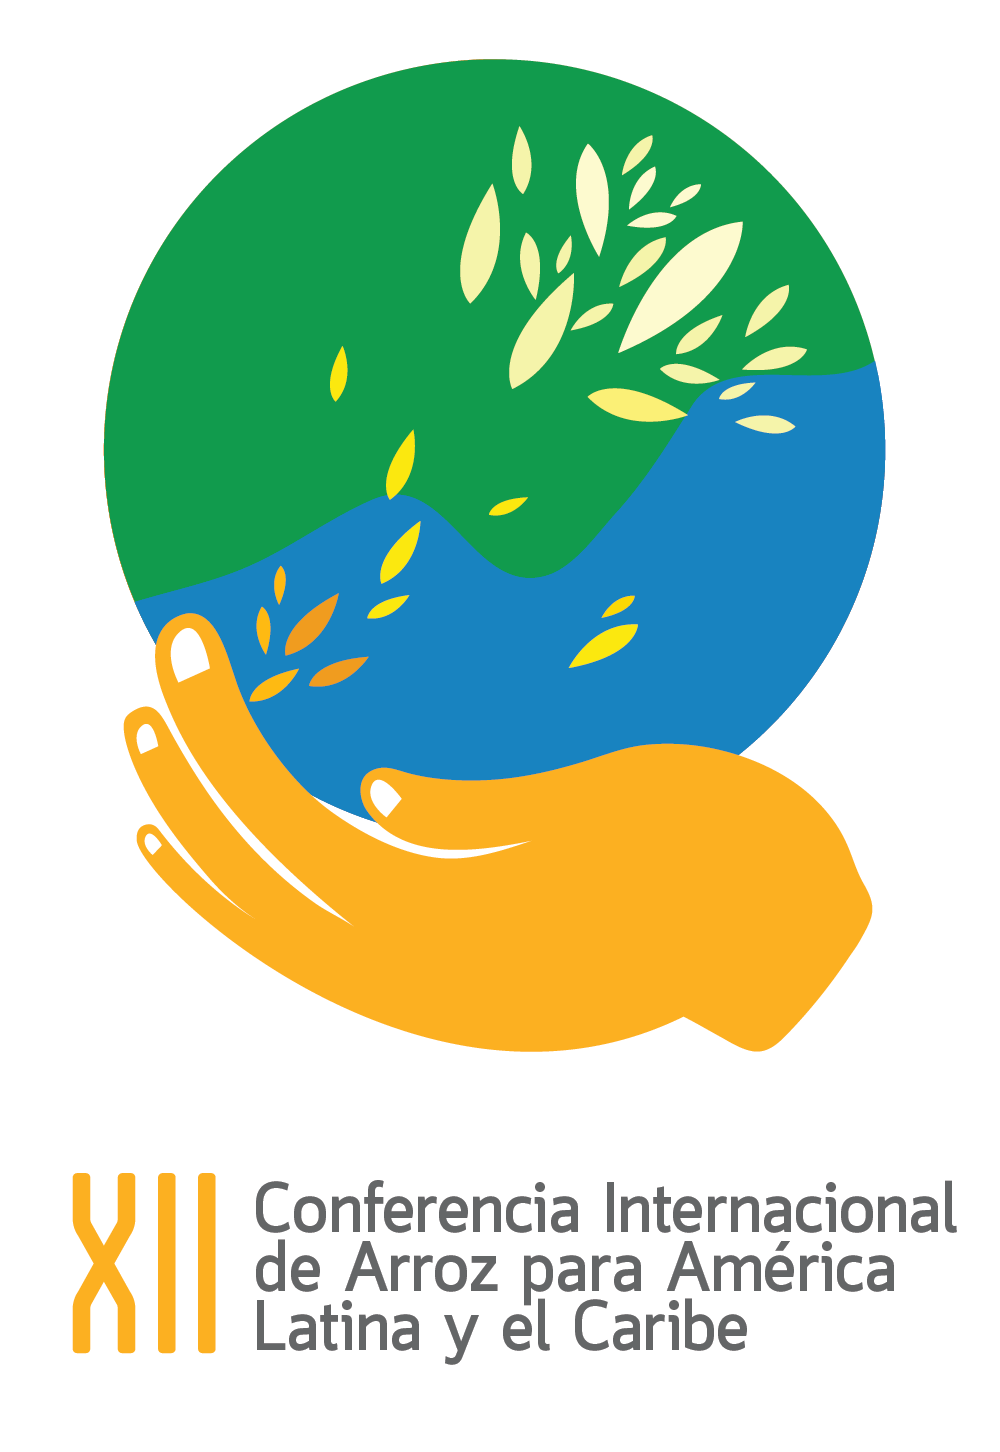 XII Conferencia Internacional de Arroz para America Latina y el Caribe